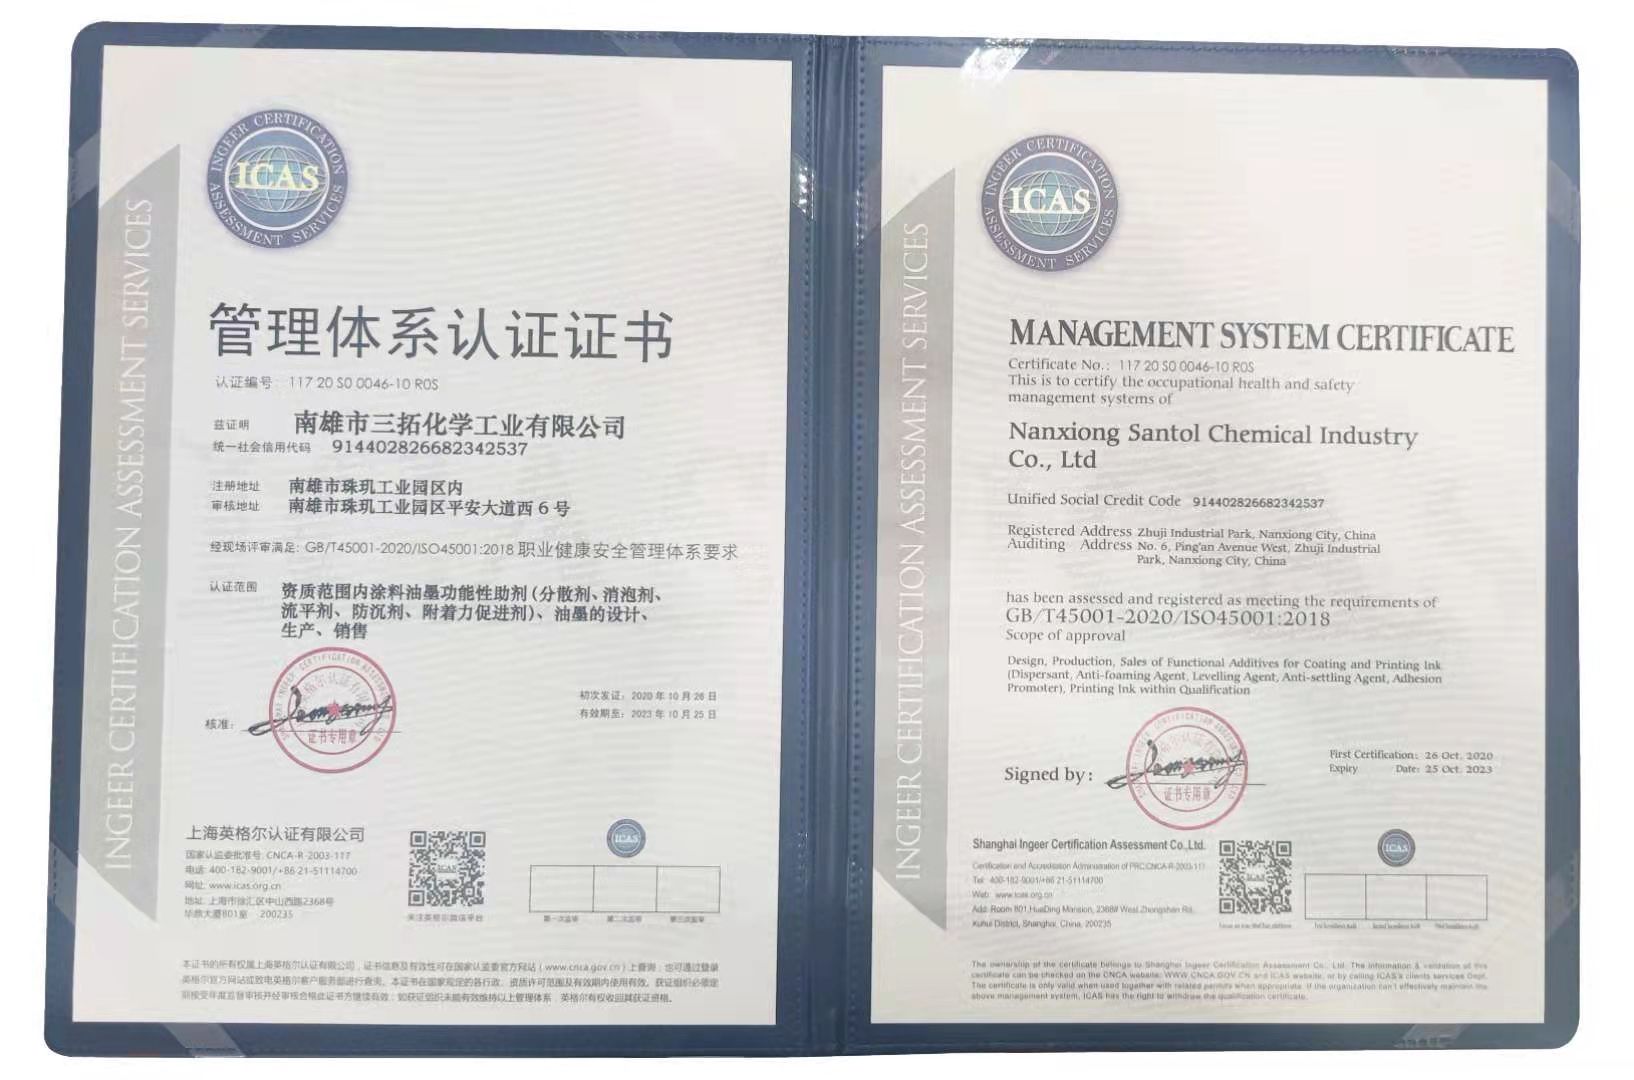 三拓化學已全面通過ISO45001管理體系認證